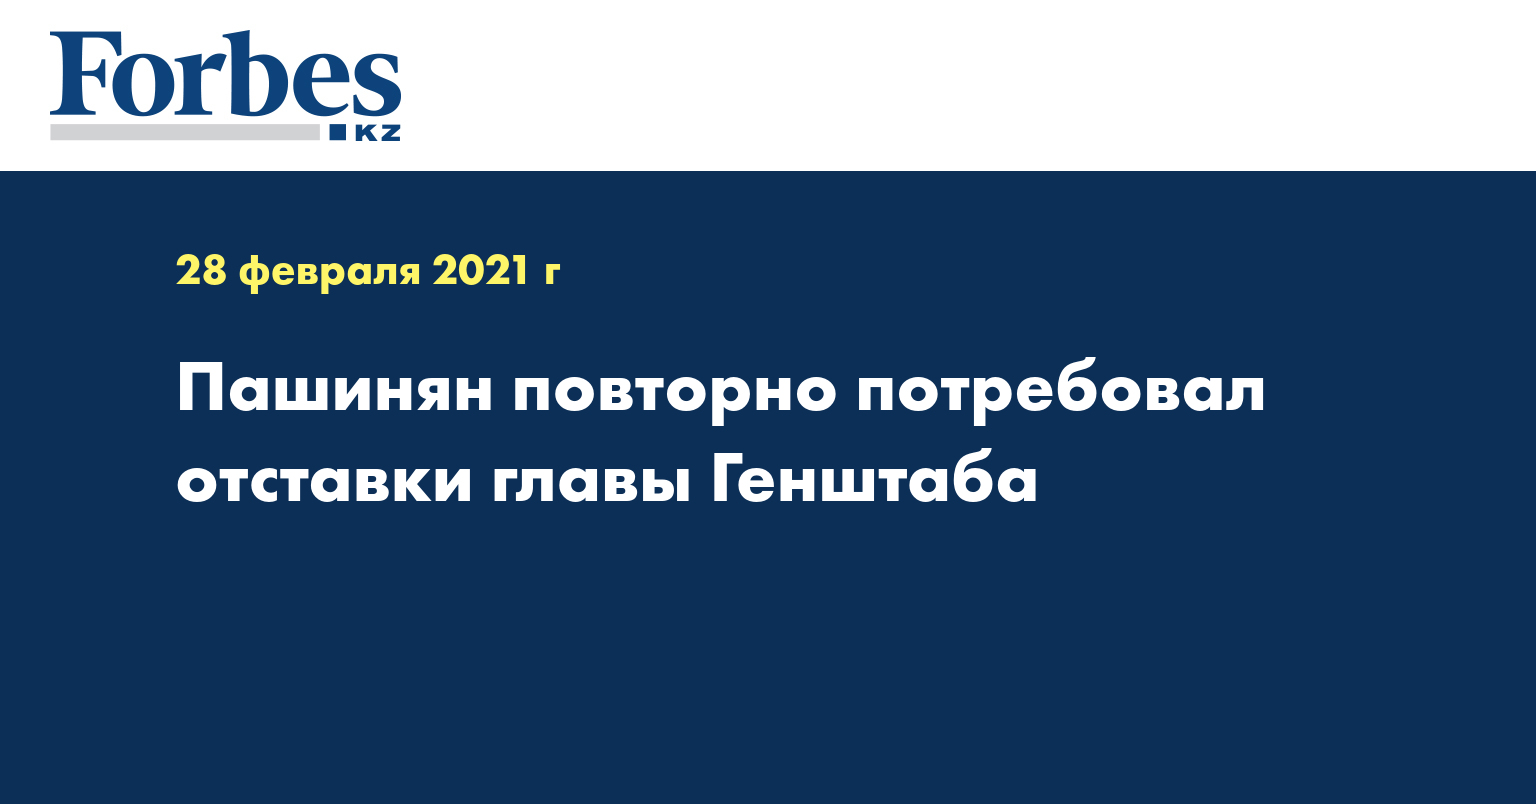 Пашинян повторно потребовал отставки главы Генштаба